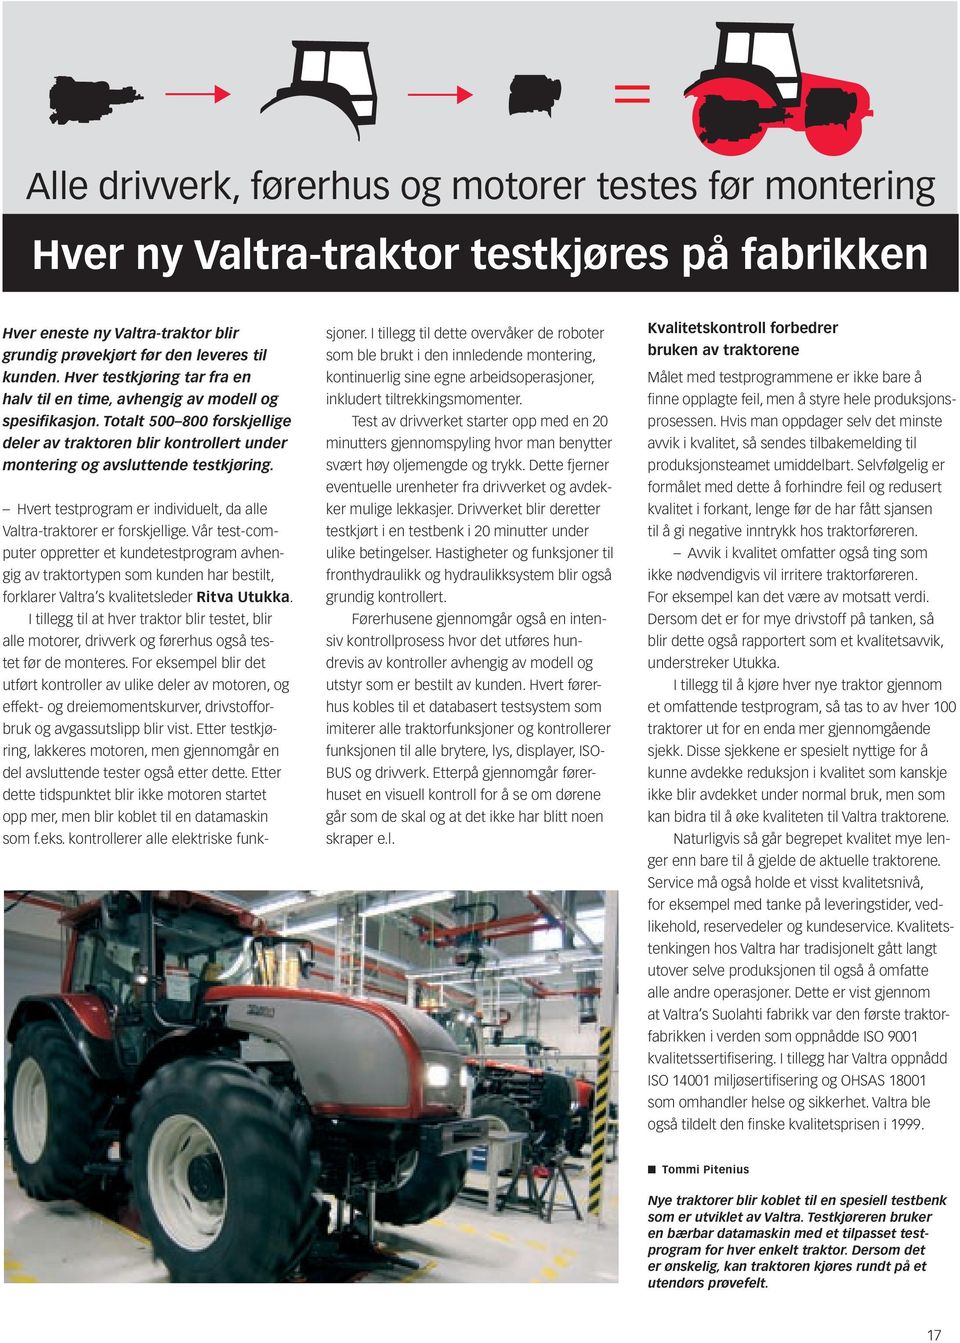 Hvert testprogram er individuelt, da alle Valtra-traktorer er forskjellige.